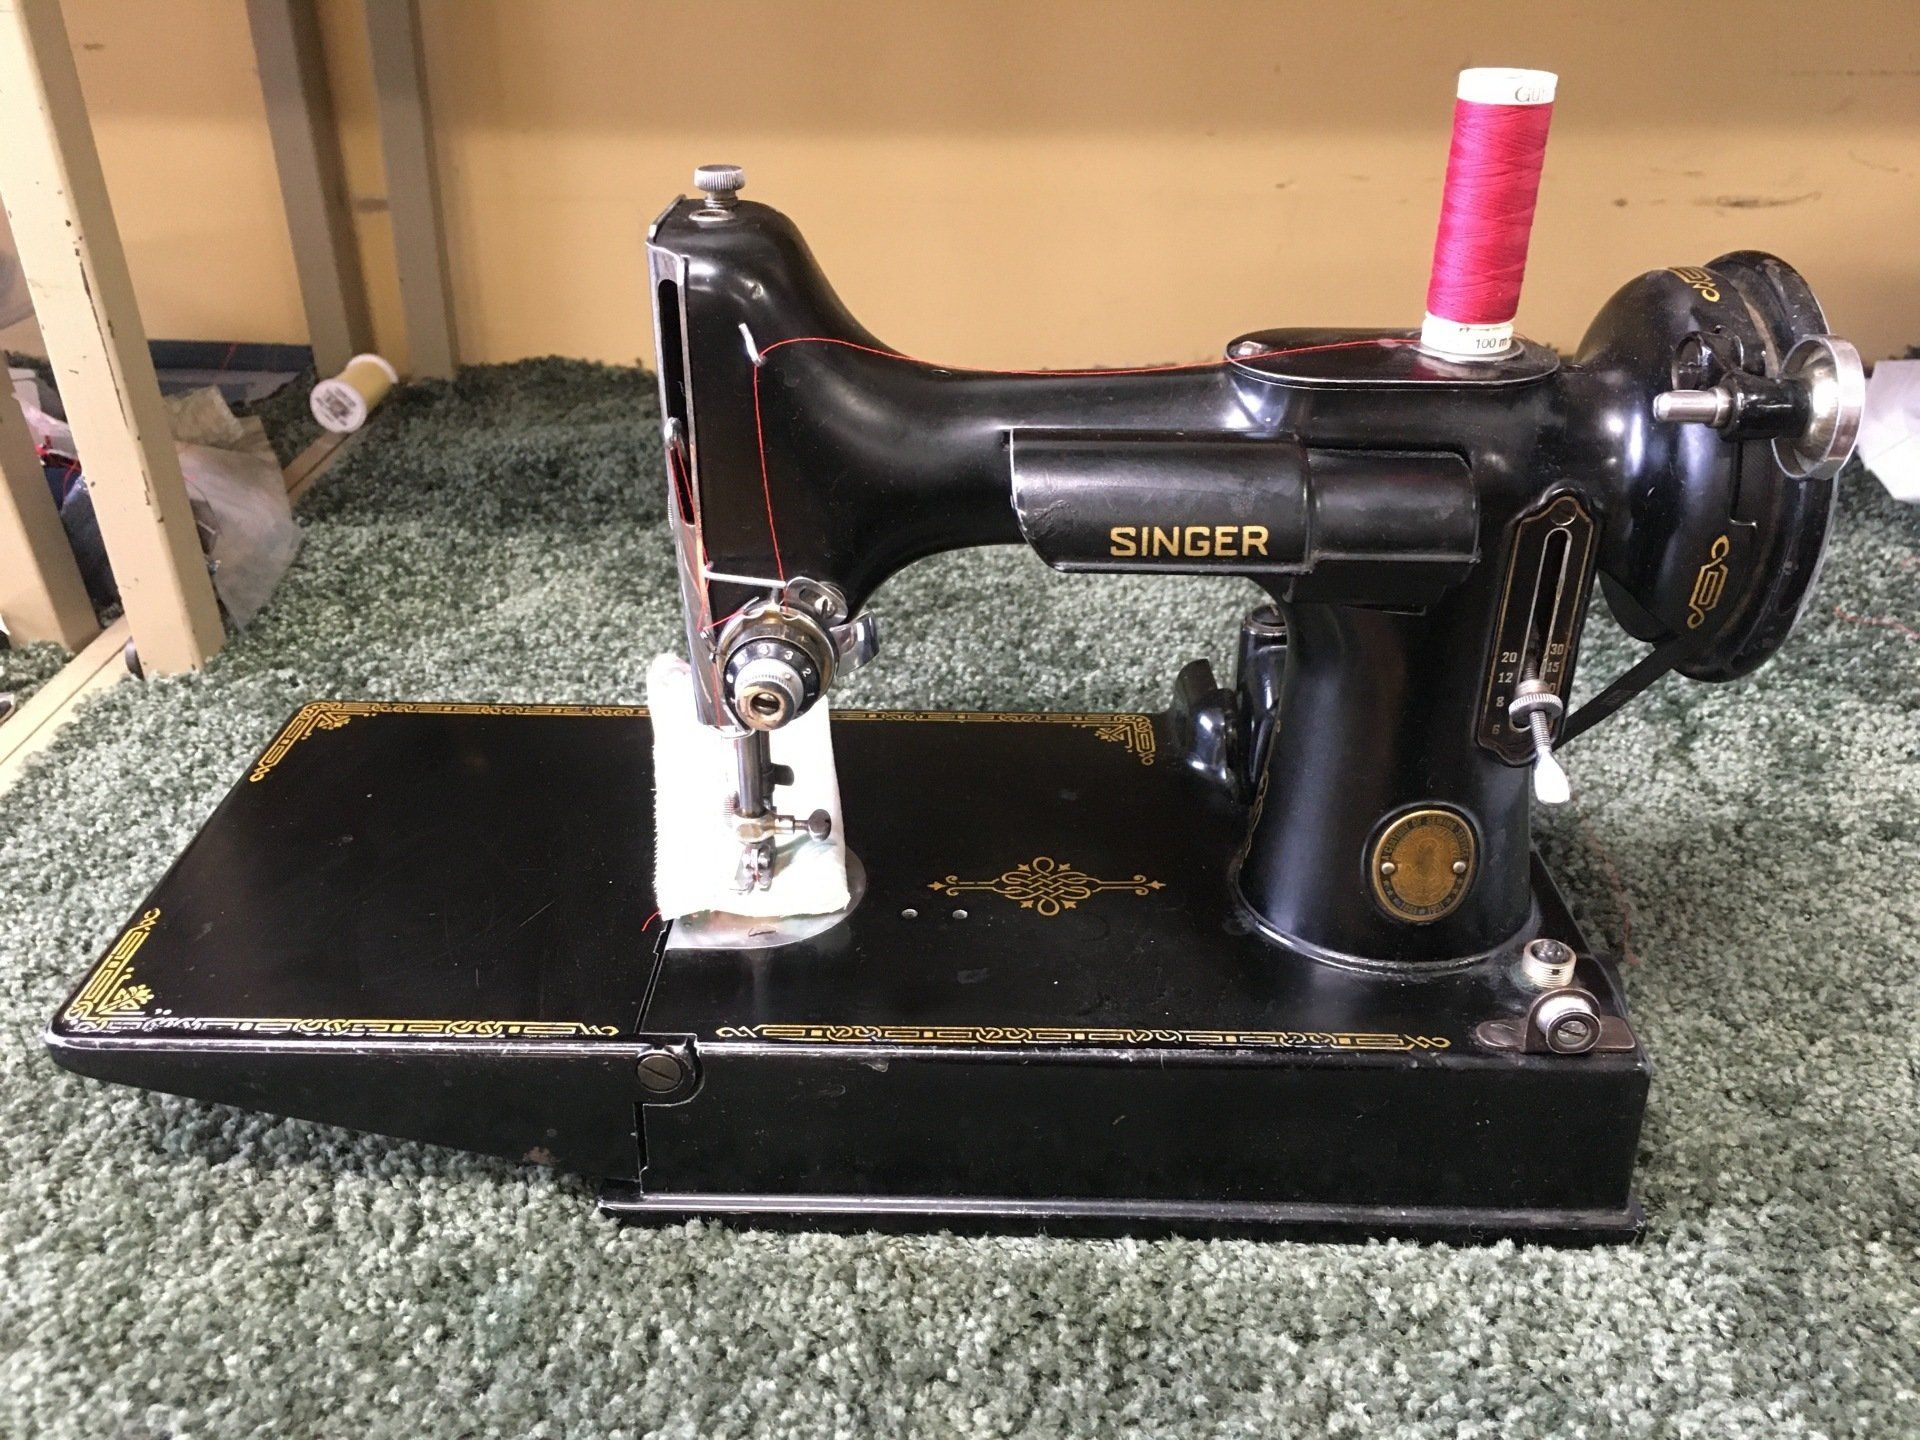 What is this vintage Singer sewing machine worth? : r/vintagesewing